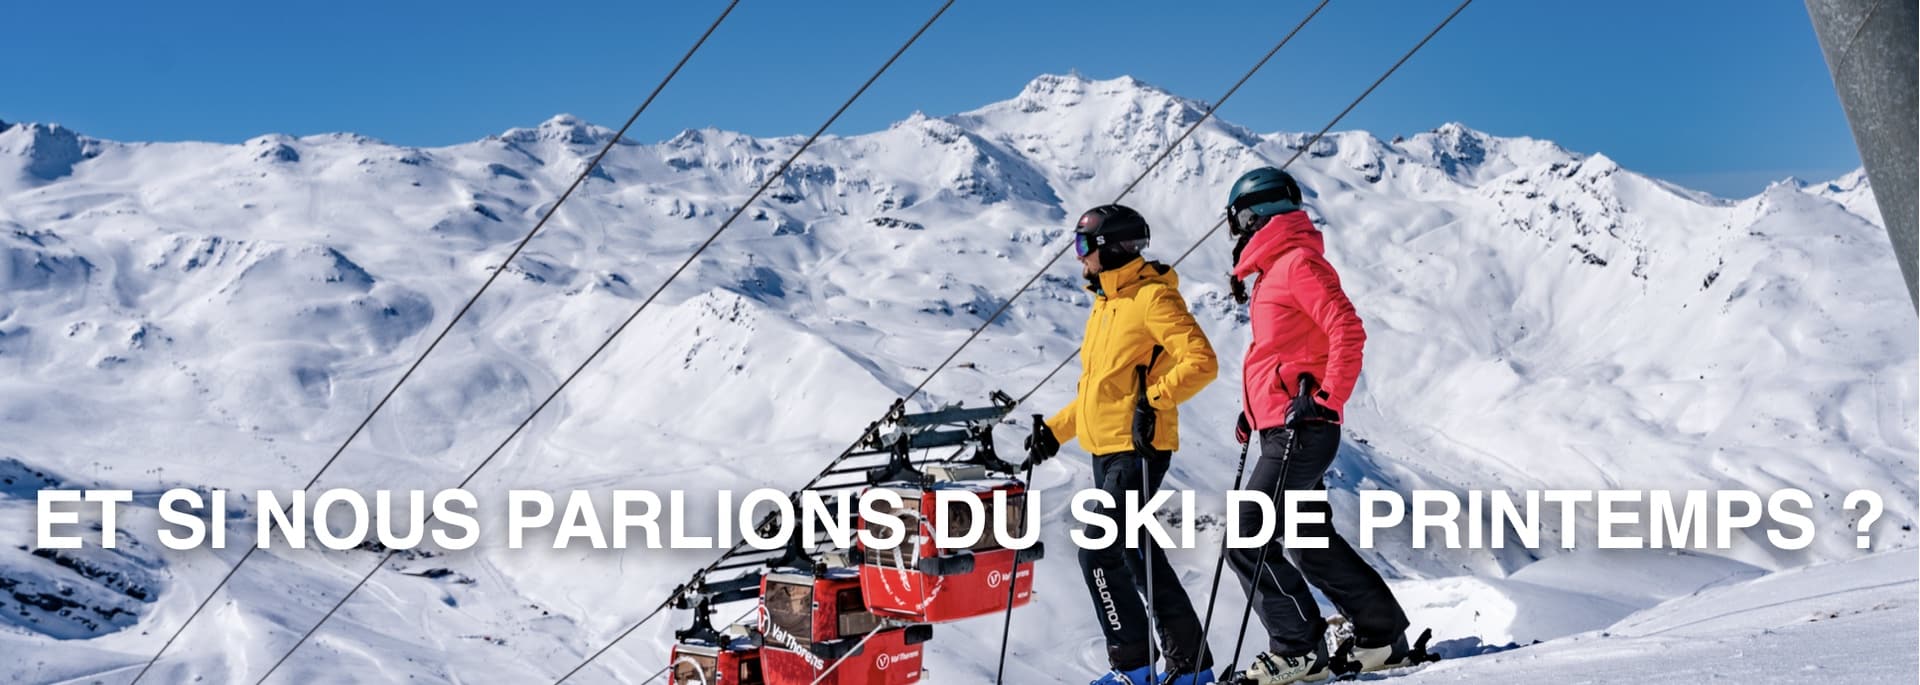 Deux skieurs dans une station de ski en hiver